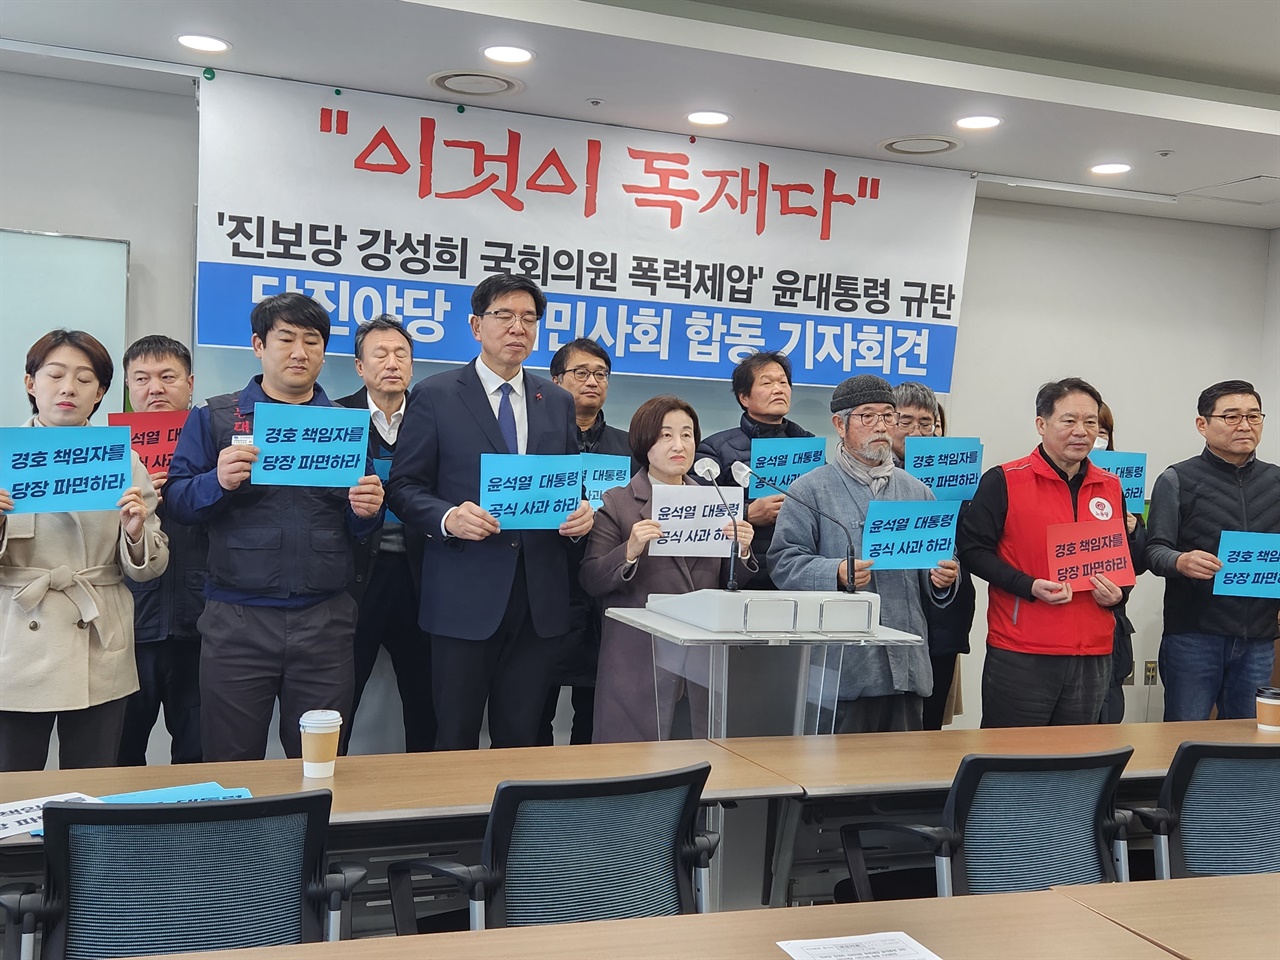 충남 당진시민사회 단체와 야당 소속 정치인들이 22일 당진시청에서 기자회견을 열고 '강성희 의원 폭력 제압'을 규탄했다.